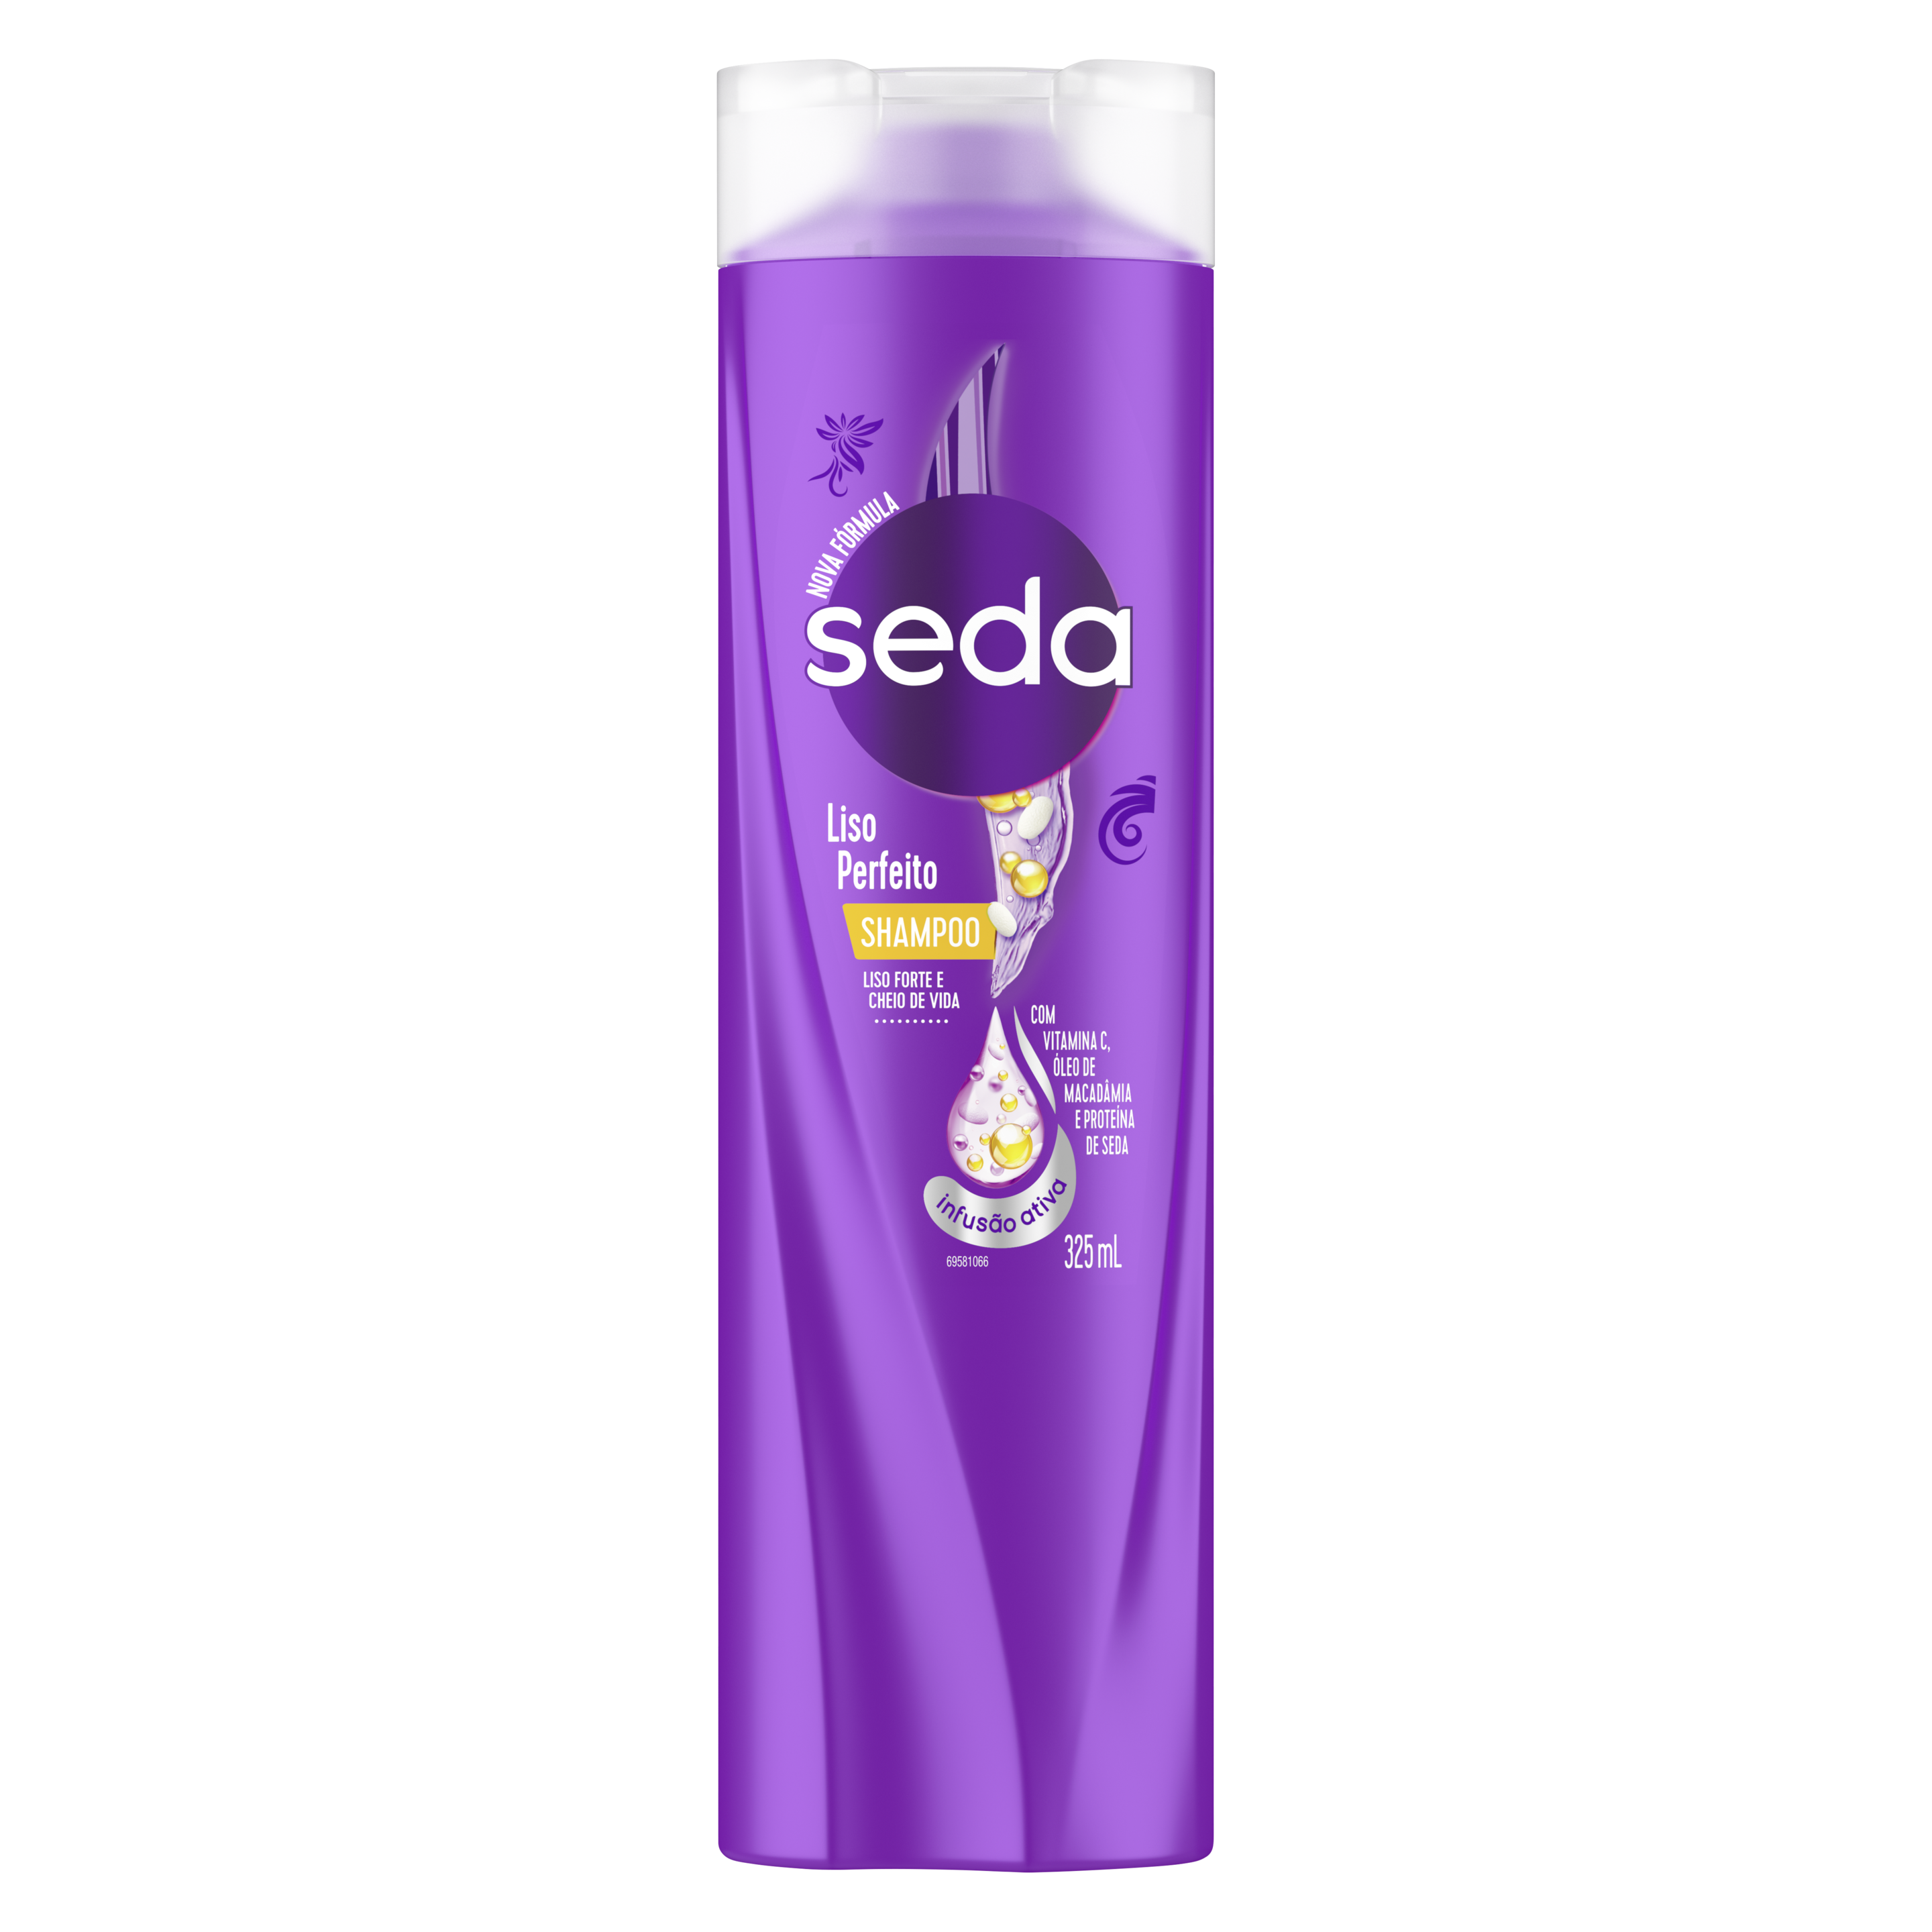 Uma imagem frontal da embalagem de Shampoo Seda Liso Perfeito 325ml